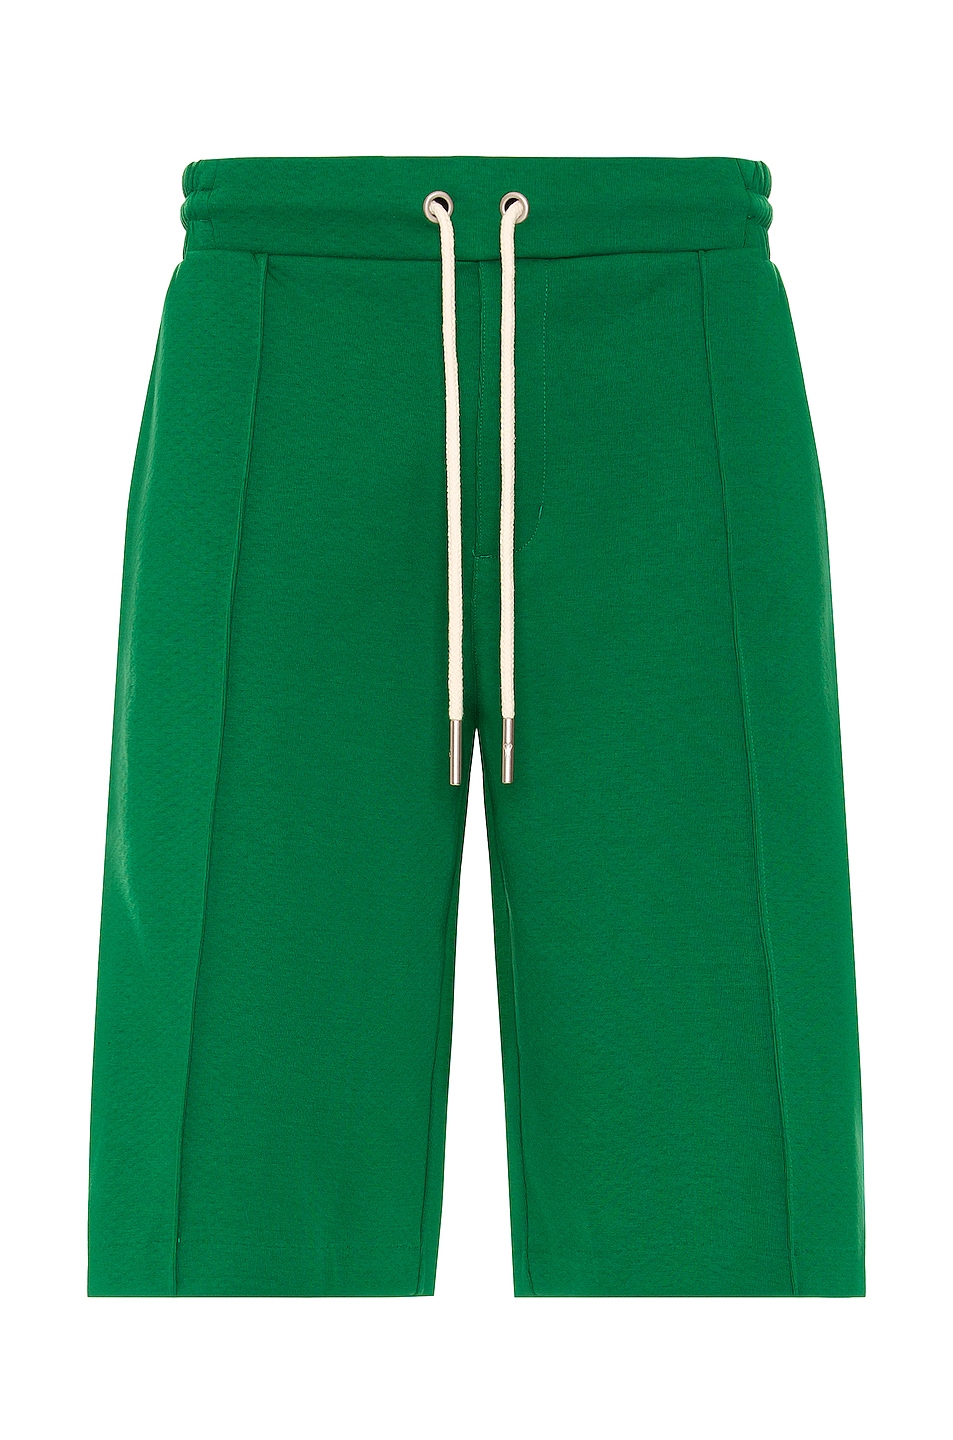 Image 1 of Puma Select AMI Shorts in Verdant Green